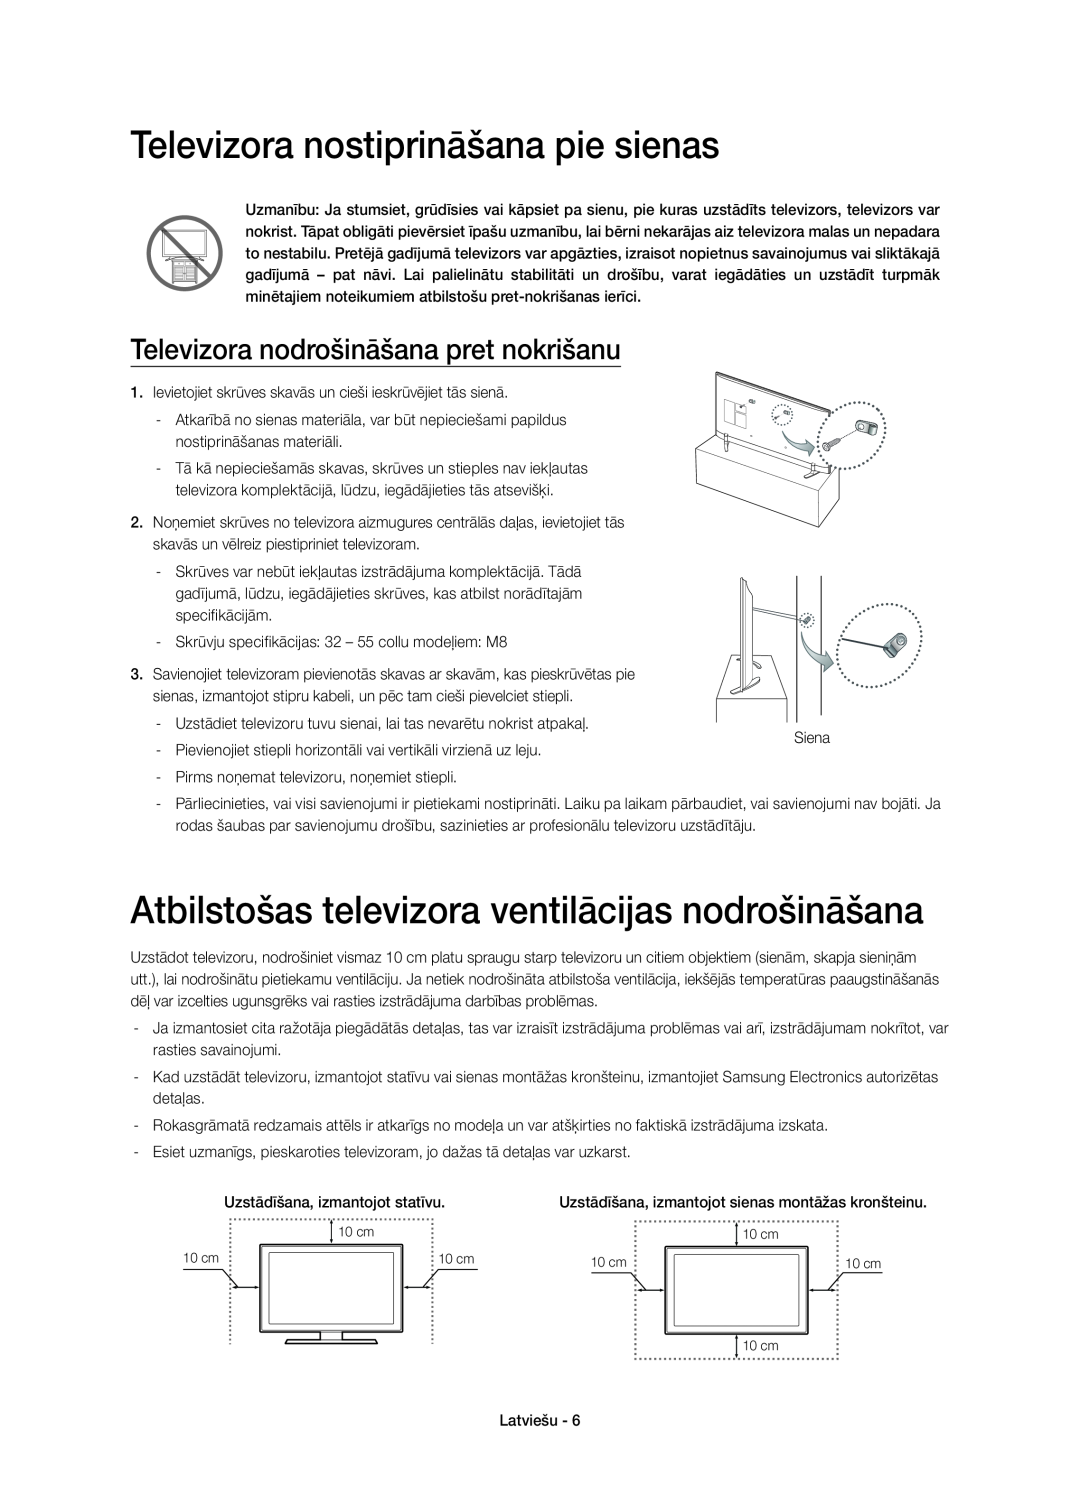 Samsung UE55H6410SUXXU manual Televizora nostiprināšana pie sienas, Atbilstošas televizora ventilācijas nodrošināšana 